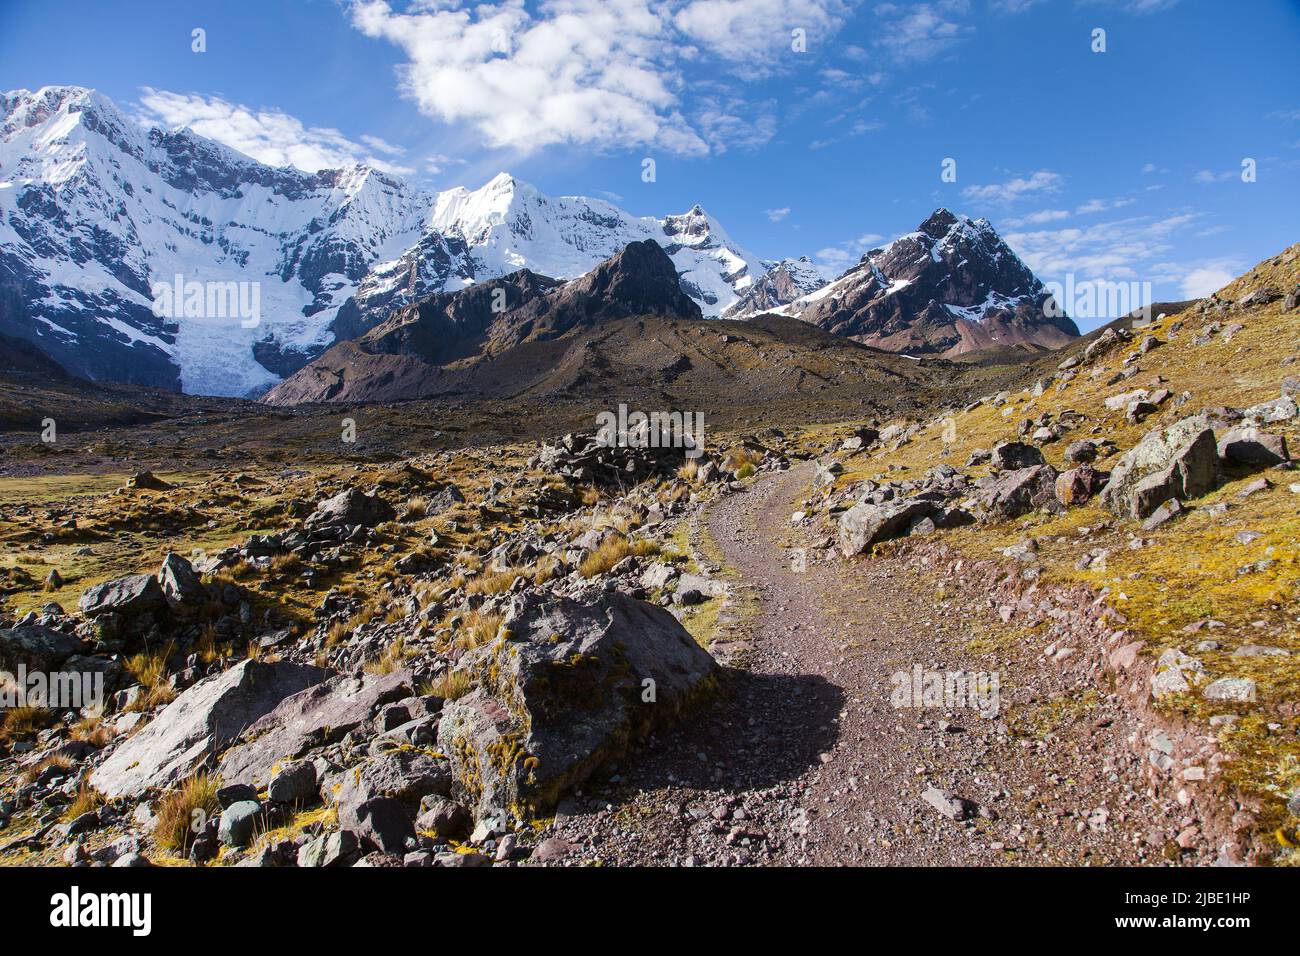 Randonnée Ausangate trekking Trail, circuit Ausangate, Cordillera Vilcanota, région de Cuzco, Pérou, paysage péruvien des Andes, Amérique du Sud Banque D'Images